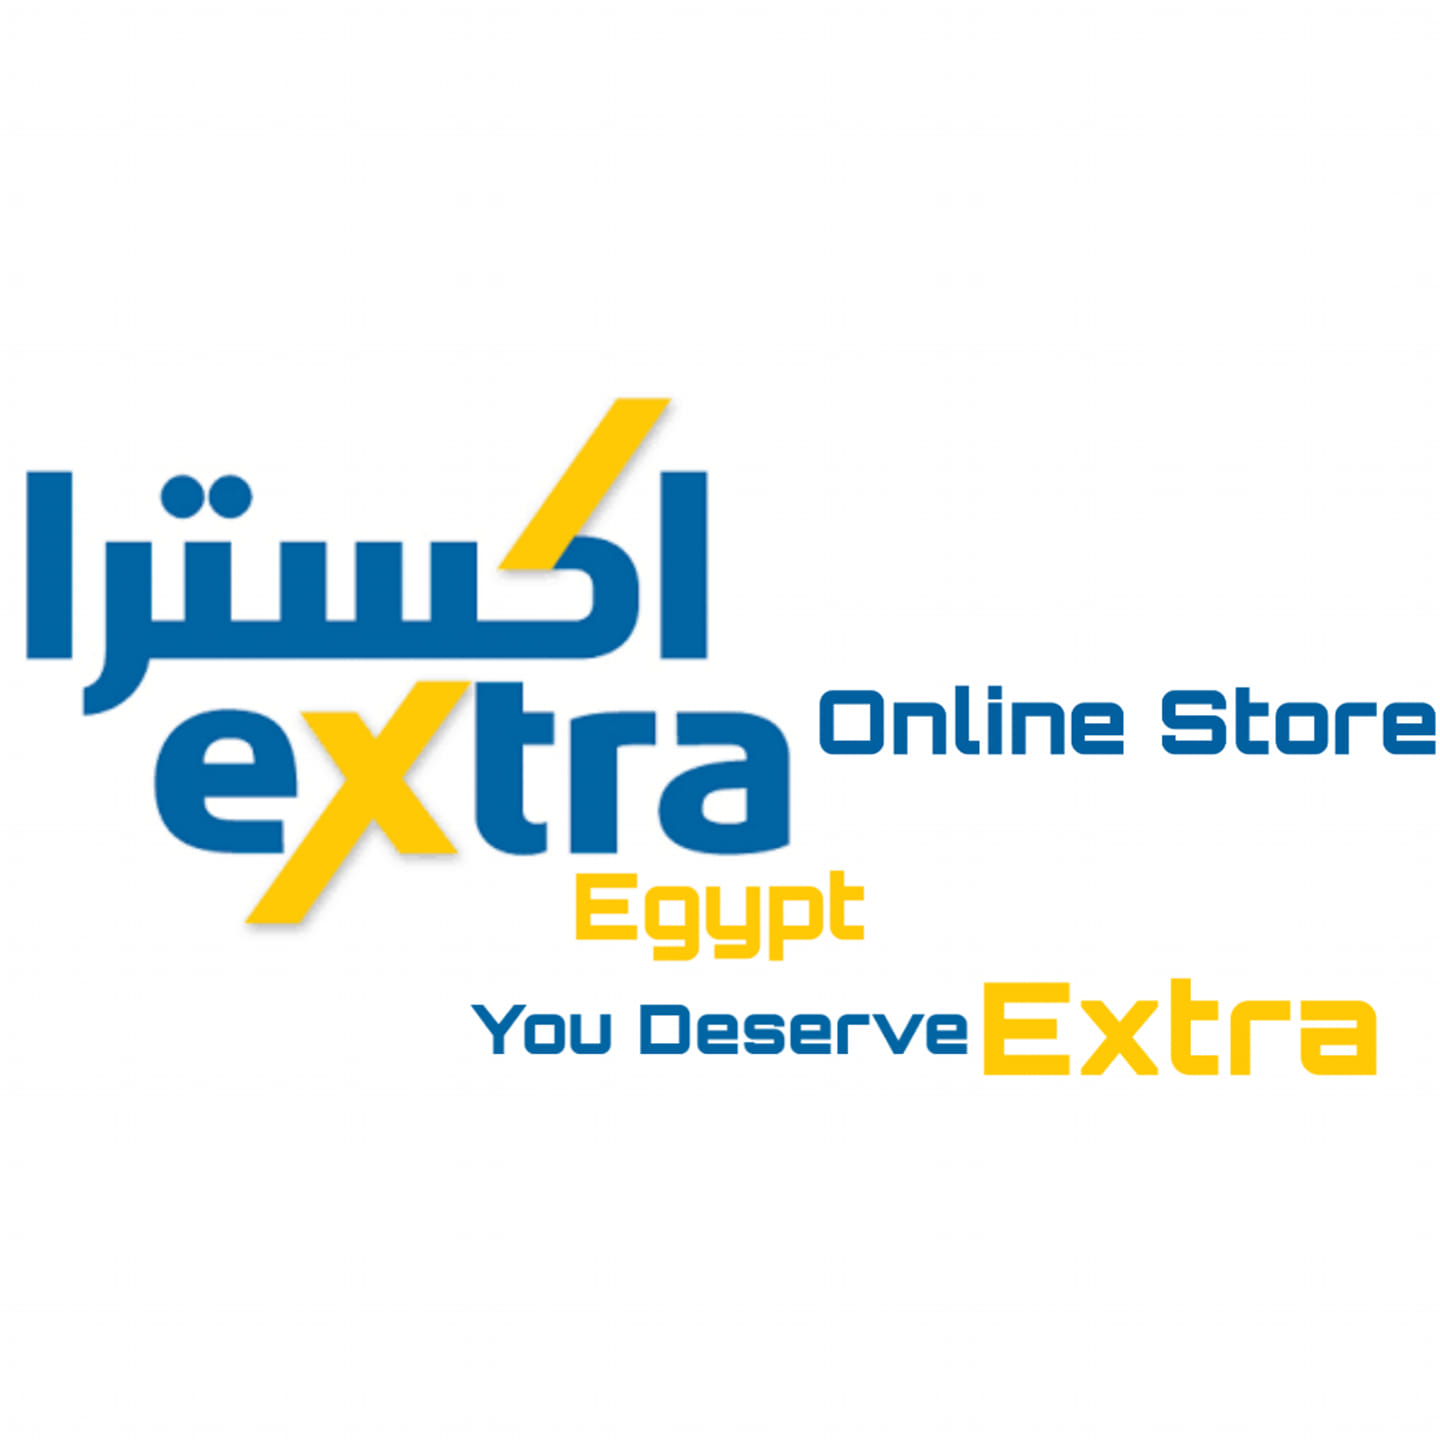 eXtra Egypt